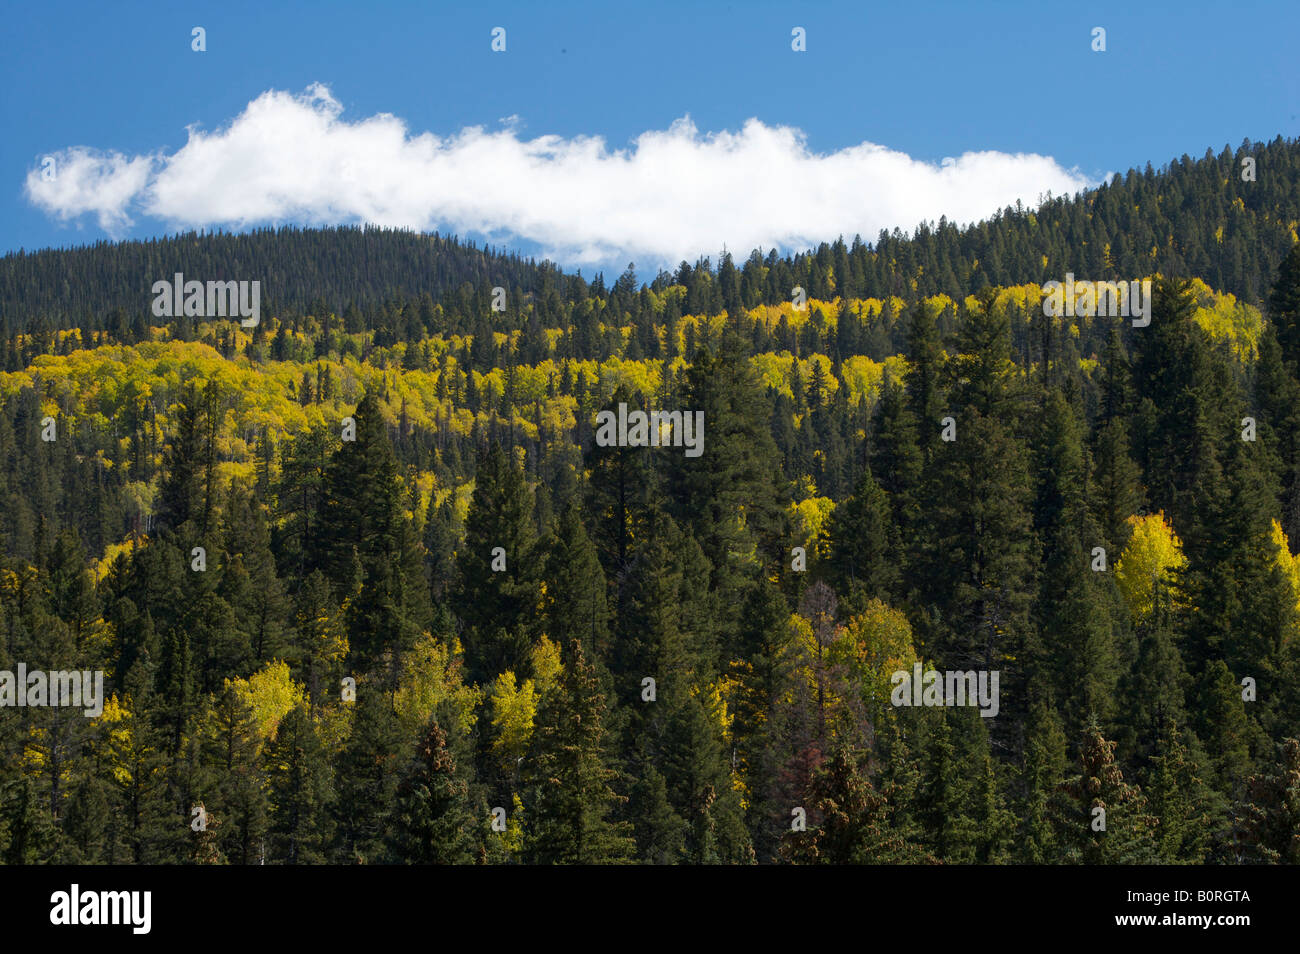 Color amarillo dorado aspen árboles y plantas perennes en la ladera de una montaña en el otoño Foto de stock